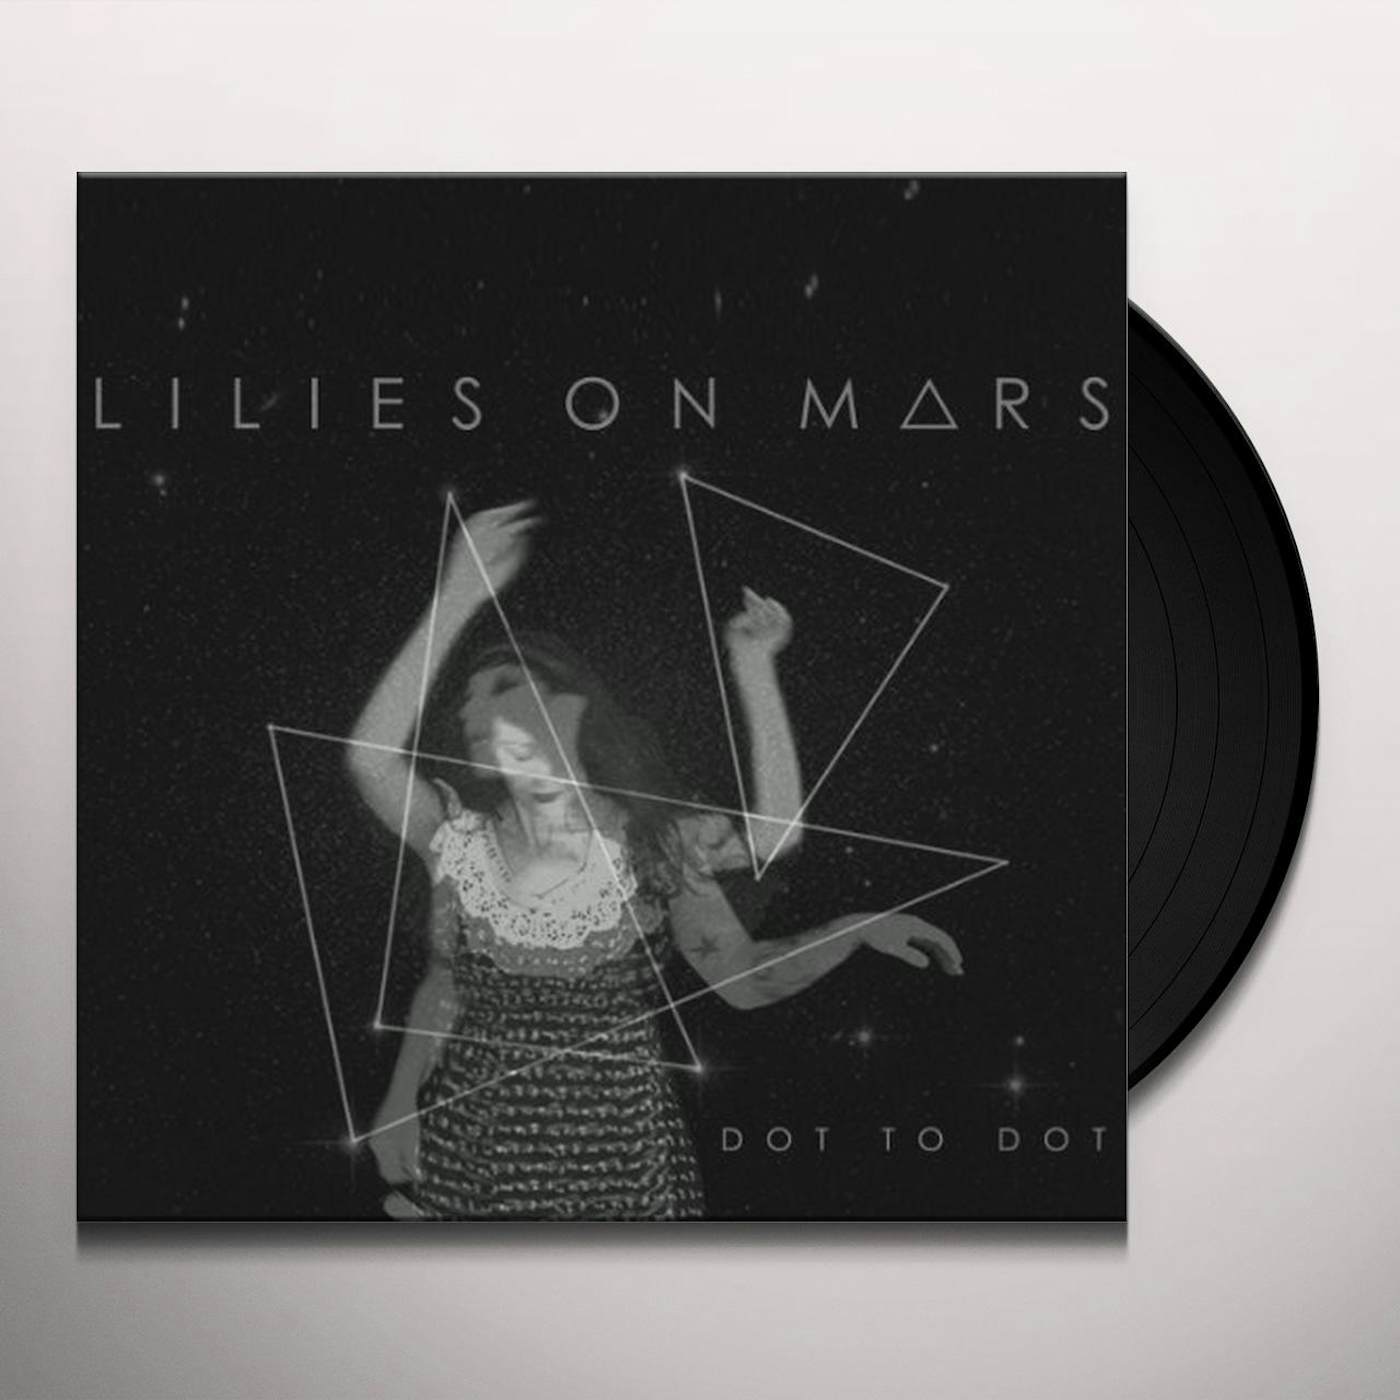 Lilies on Mars Dot to Dot Vinyl Record